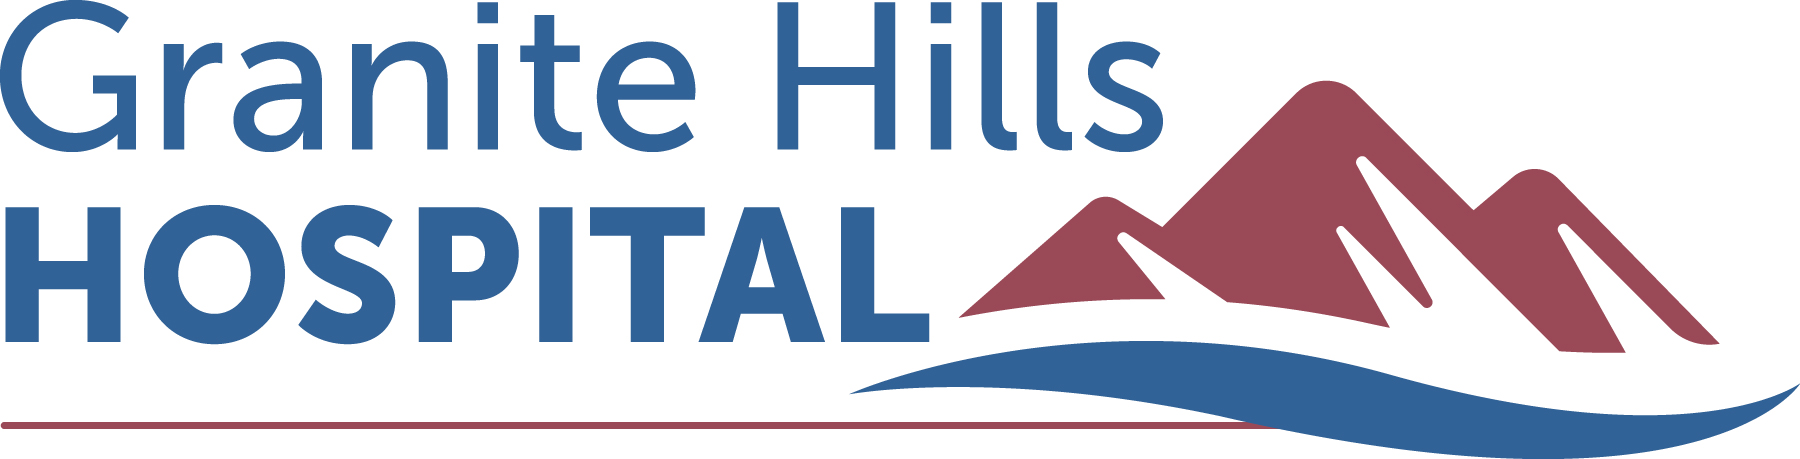 Granite Hills Hospital_Logo.jpg